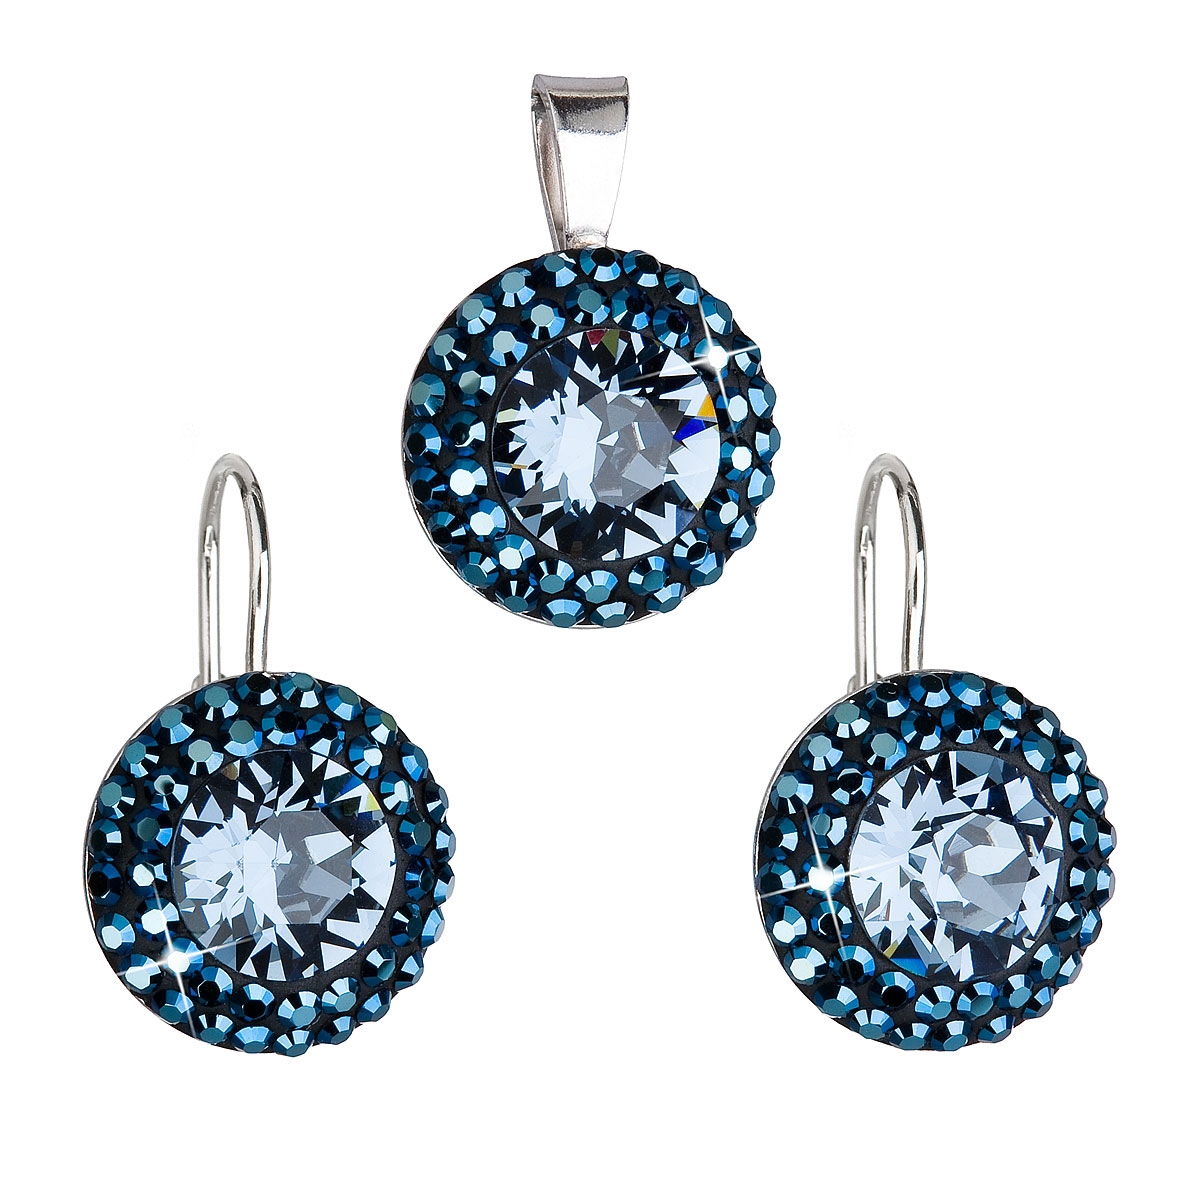 Sada šperkov s kameňmi Crystals from Swarovski ® METALIC BLUE